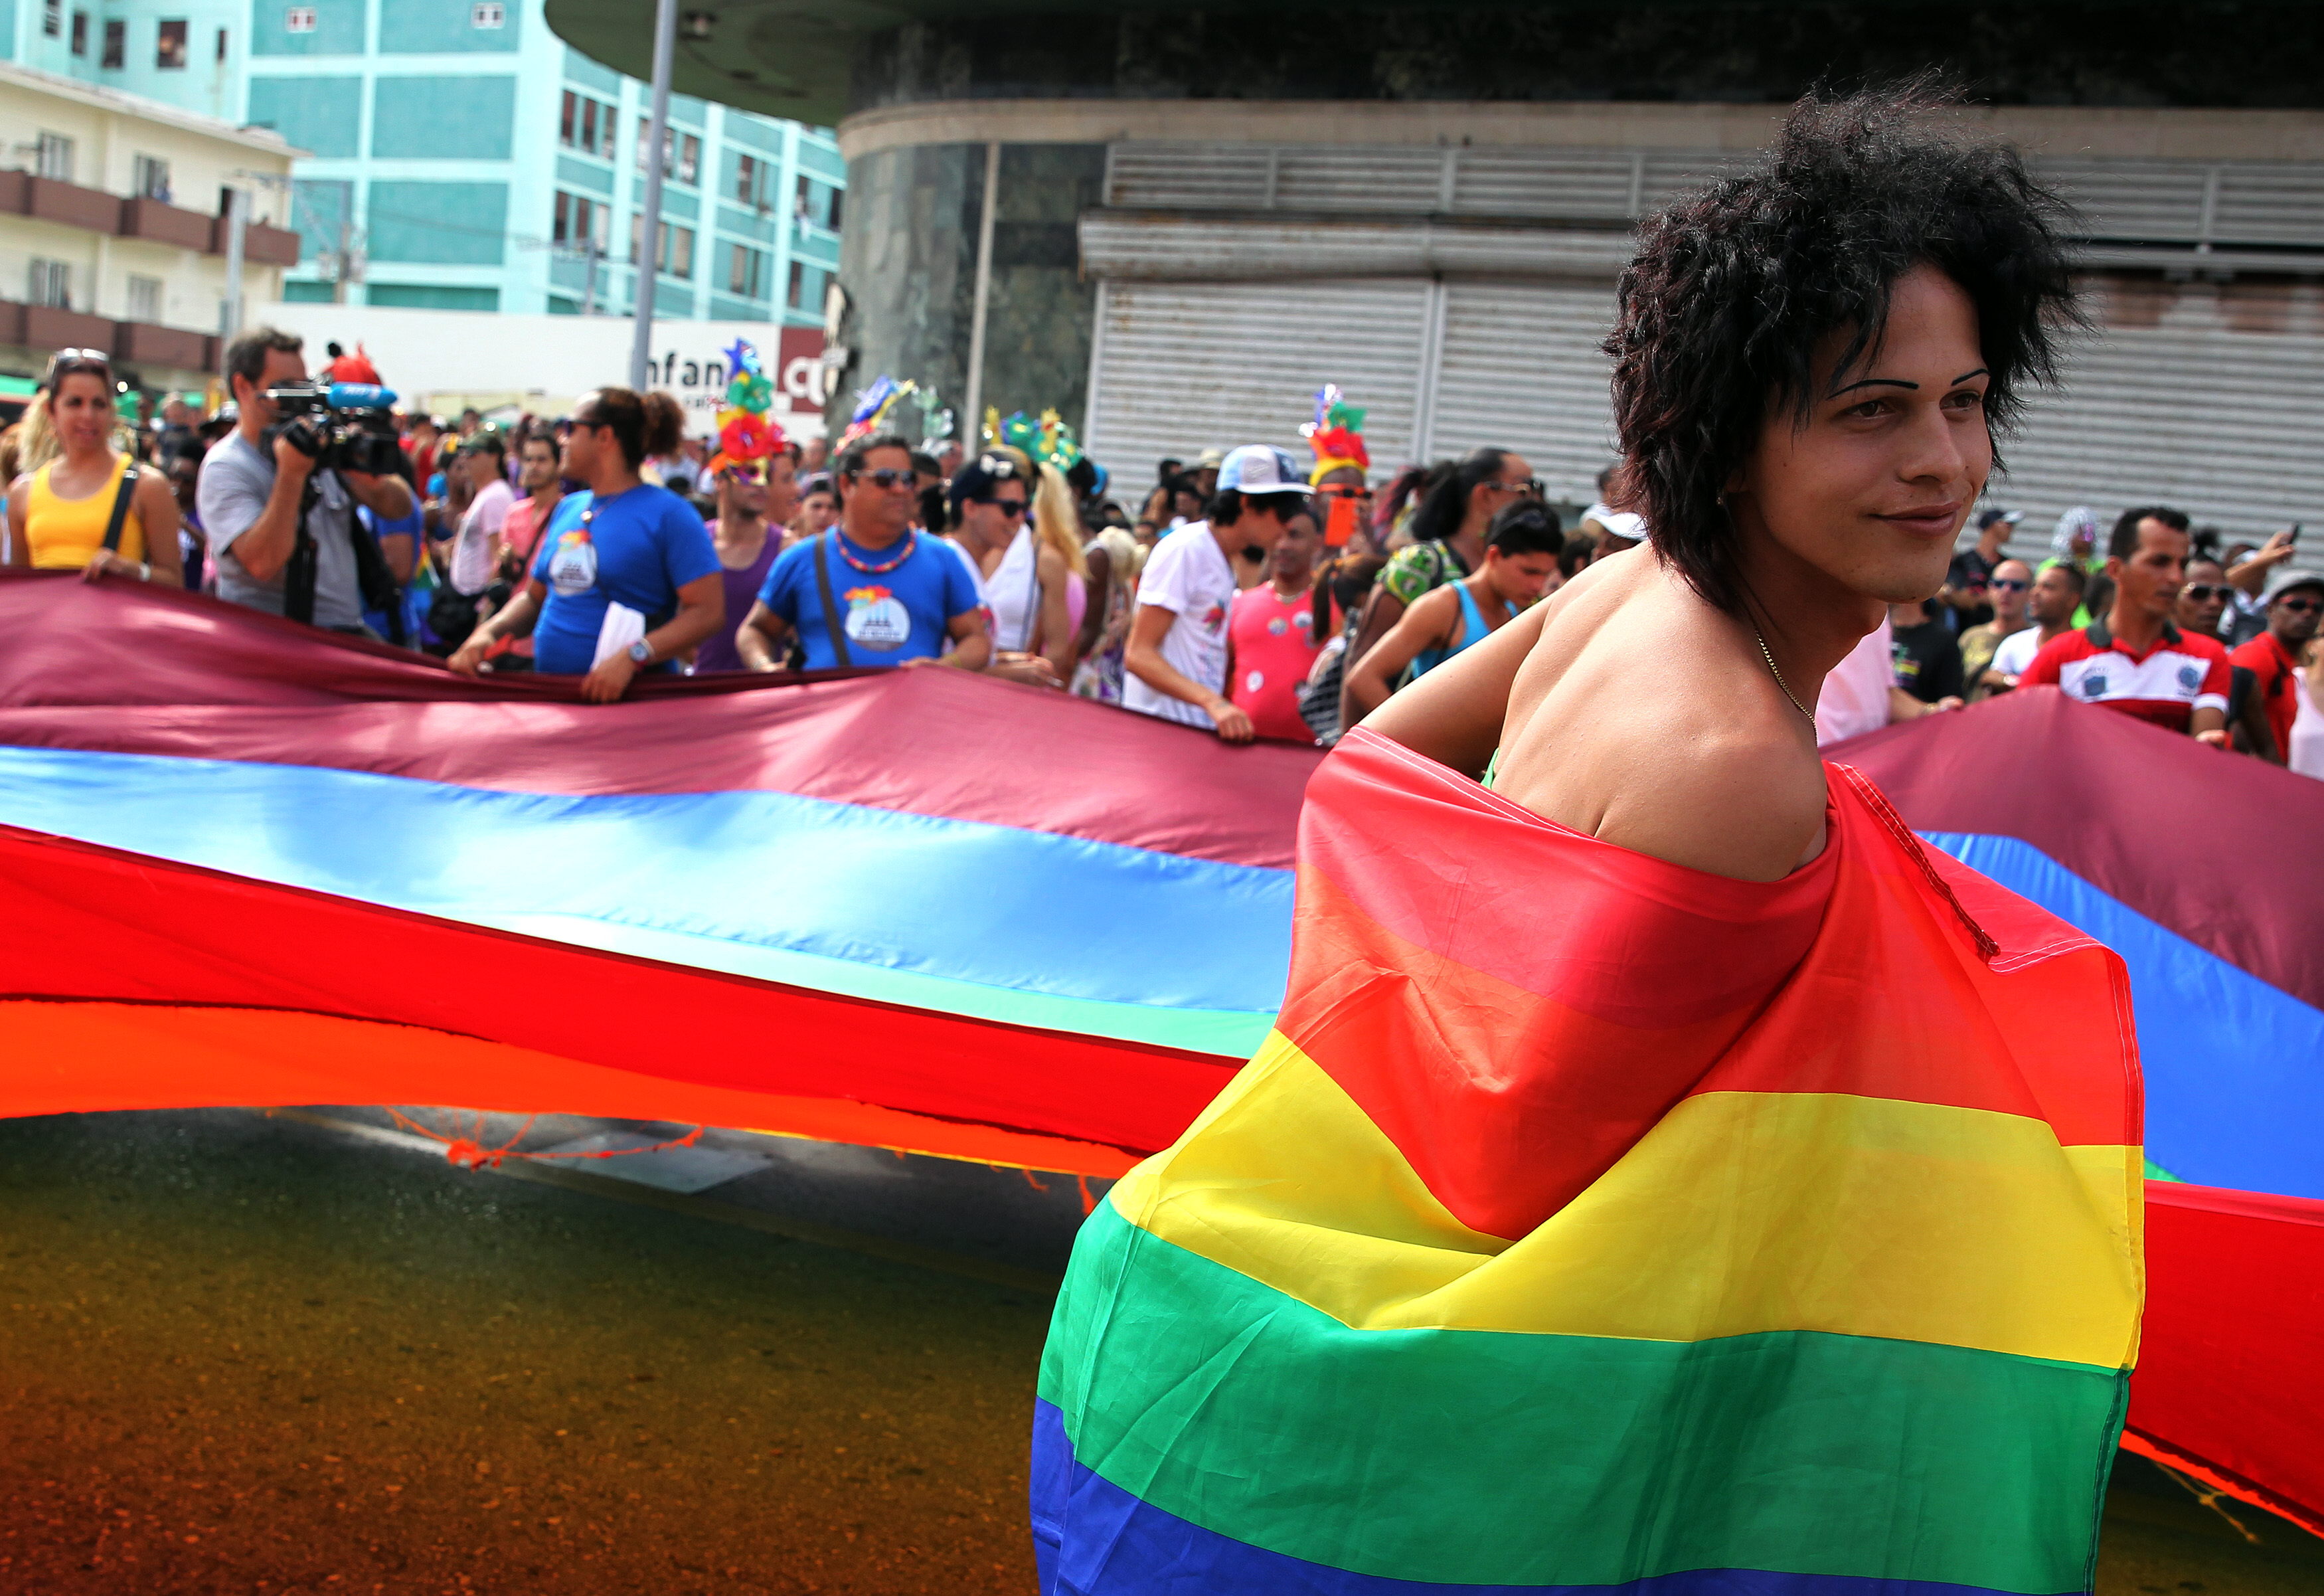 Esta fecha es propicia para recordar la lucha de la comunidad LGBT para ser visibilizados y contar con los mismos derechos que las parejas heterosexuales.